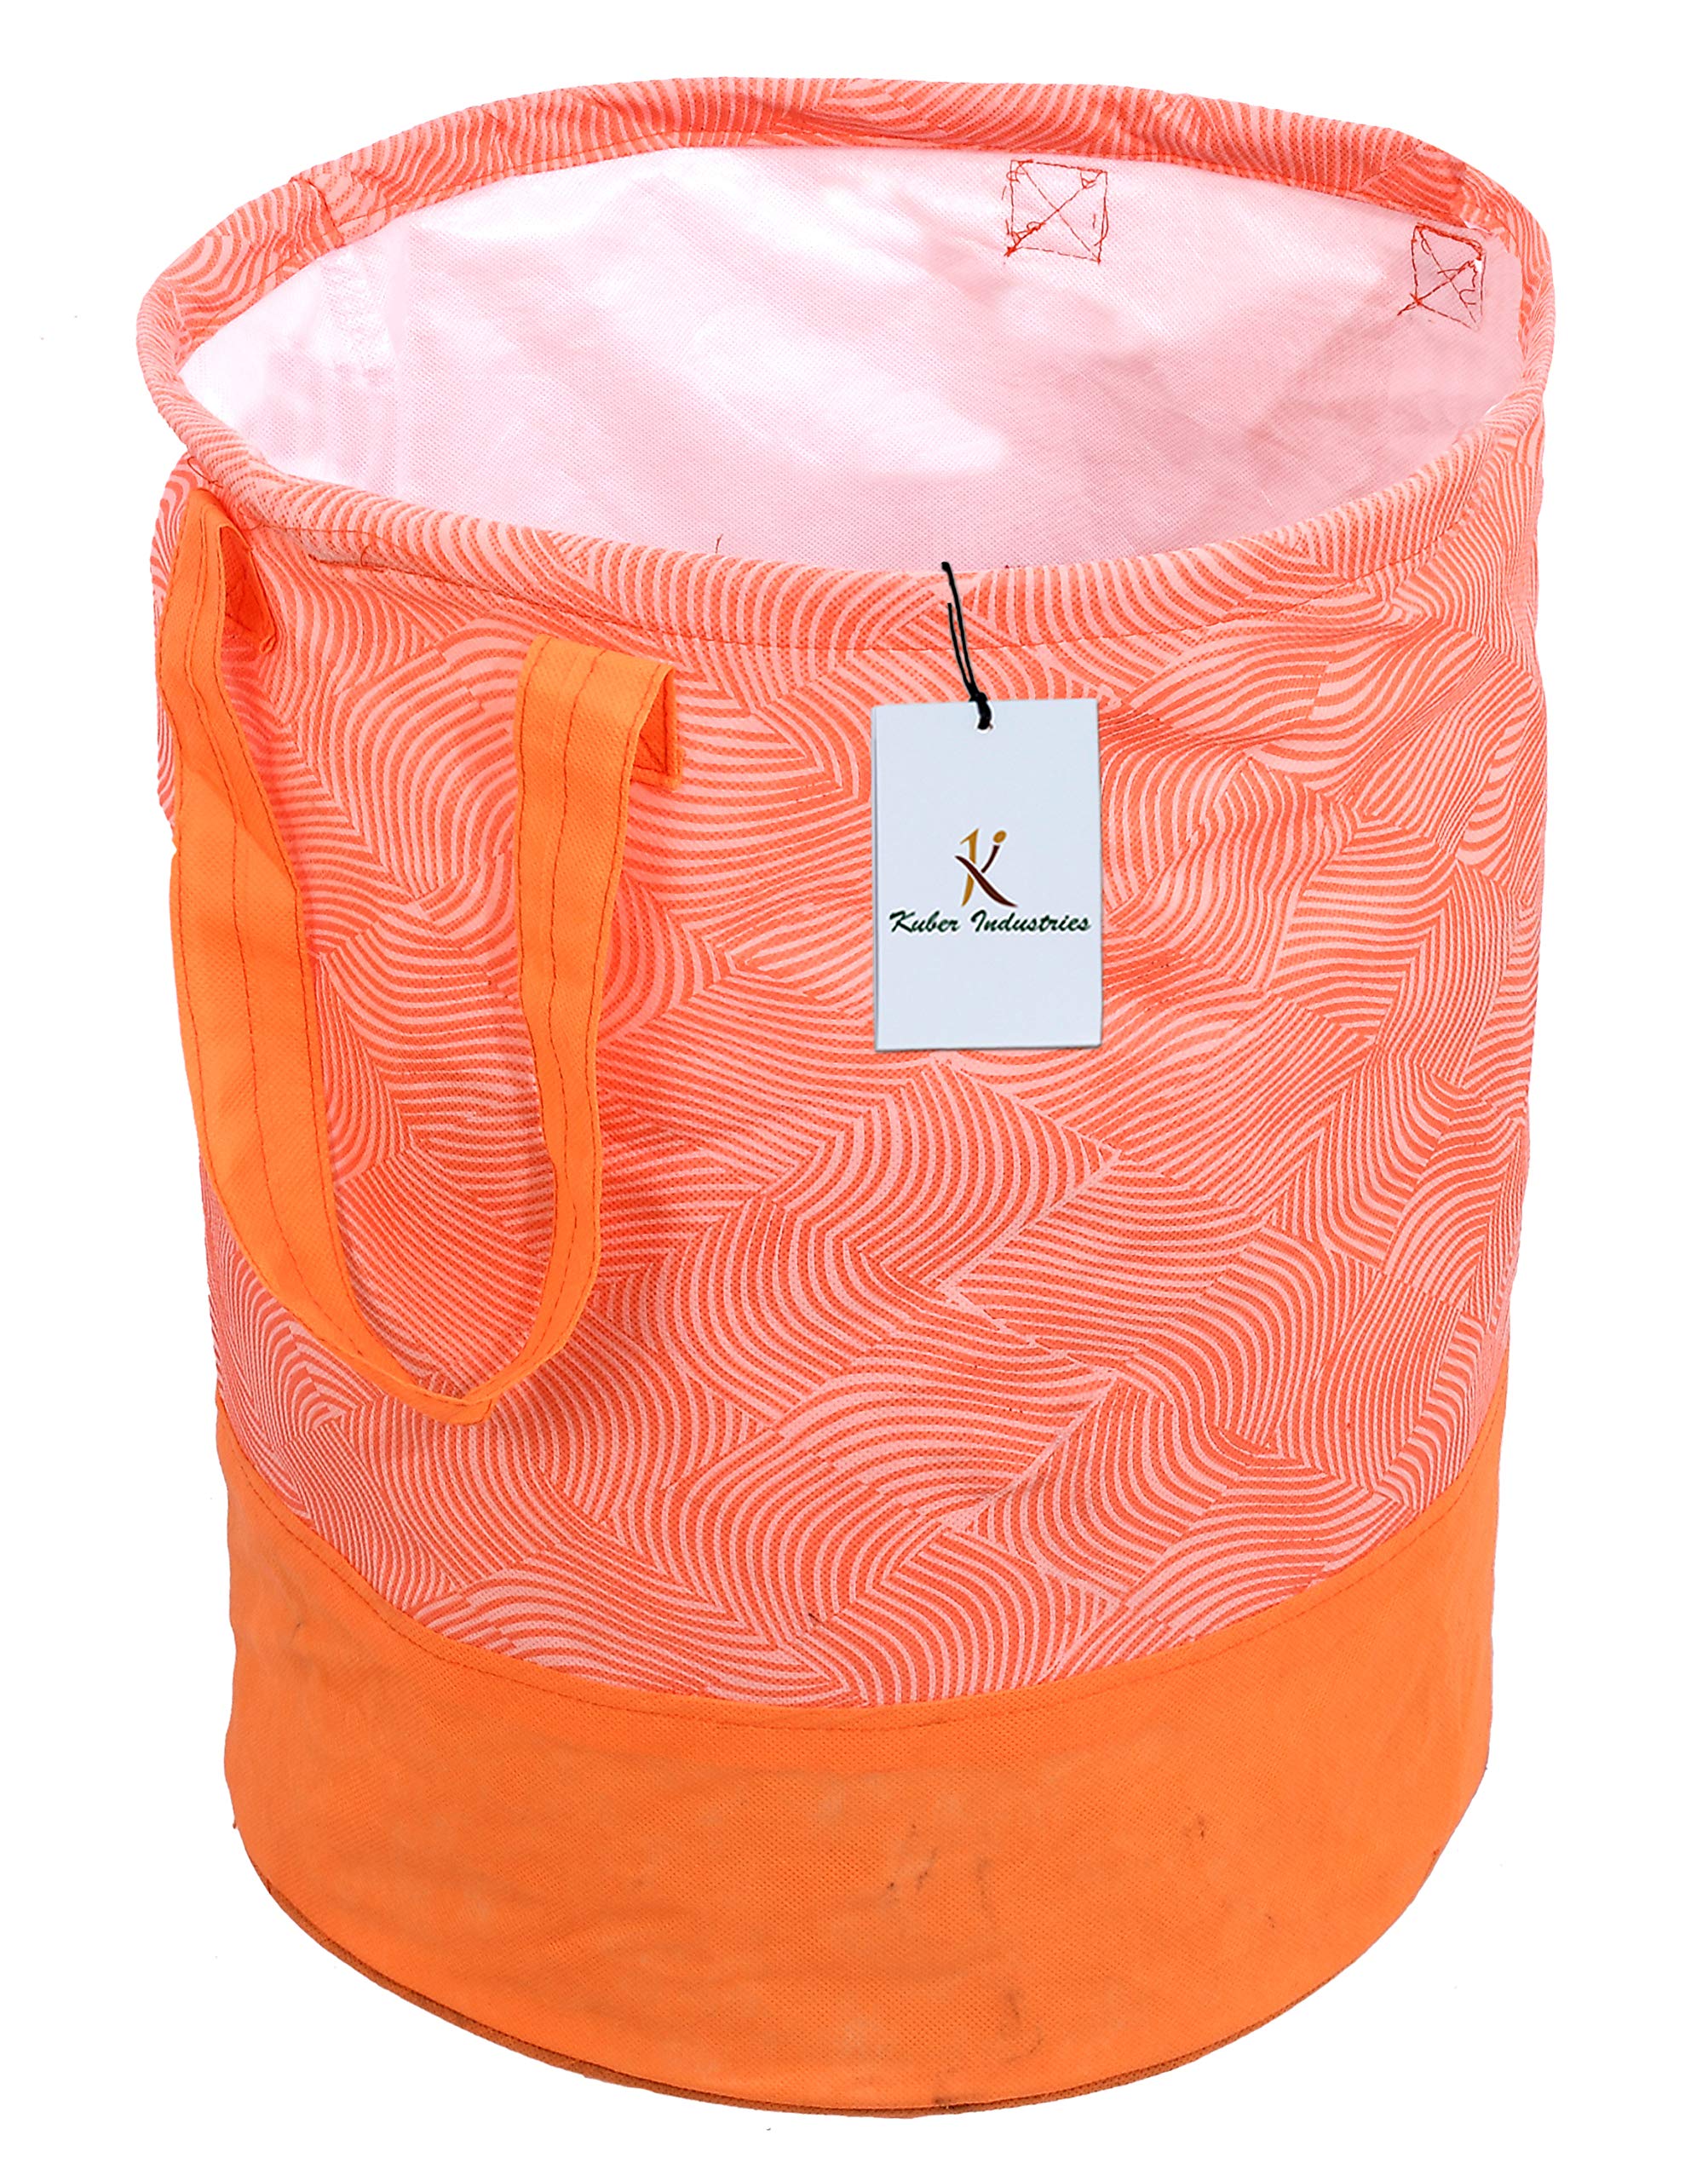 Kuber Industries Laheriya Printed Waterproof Canvas Laundry Bag|Toy Storage| Laundry Basket Organizer With Handles, 45 L (Orange) CTKTC134628, pack of 1